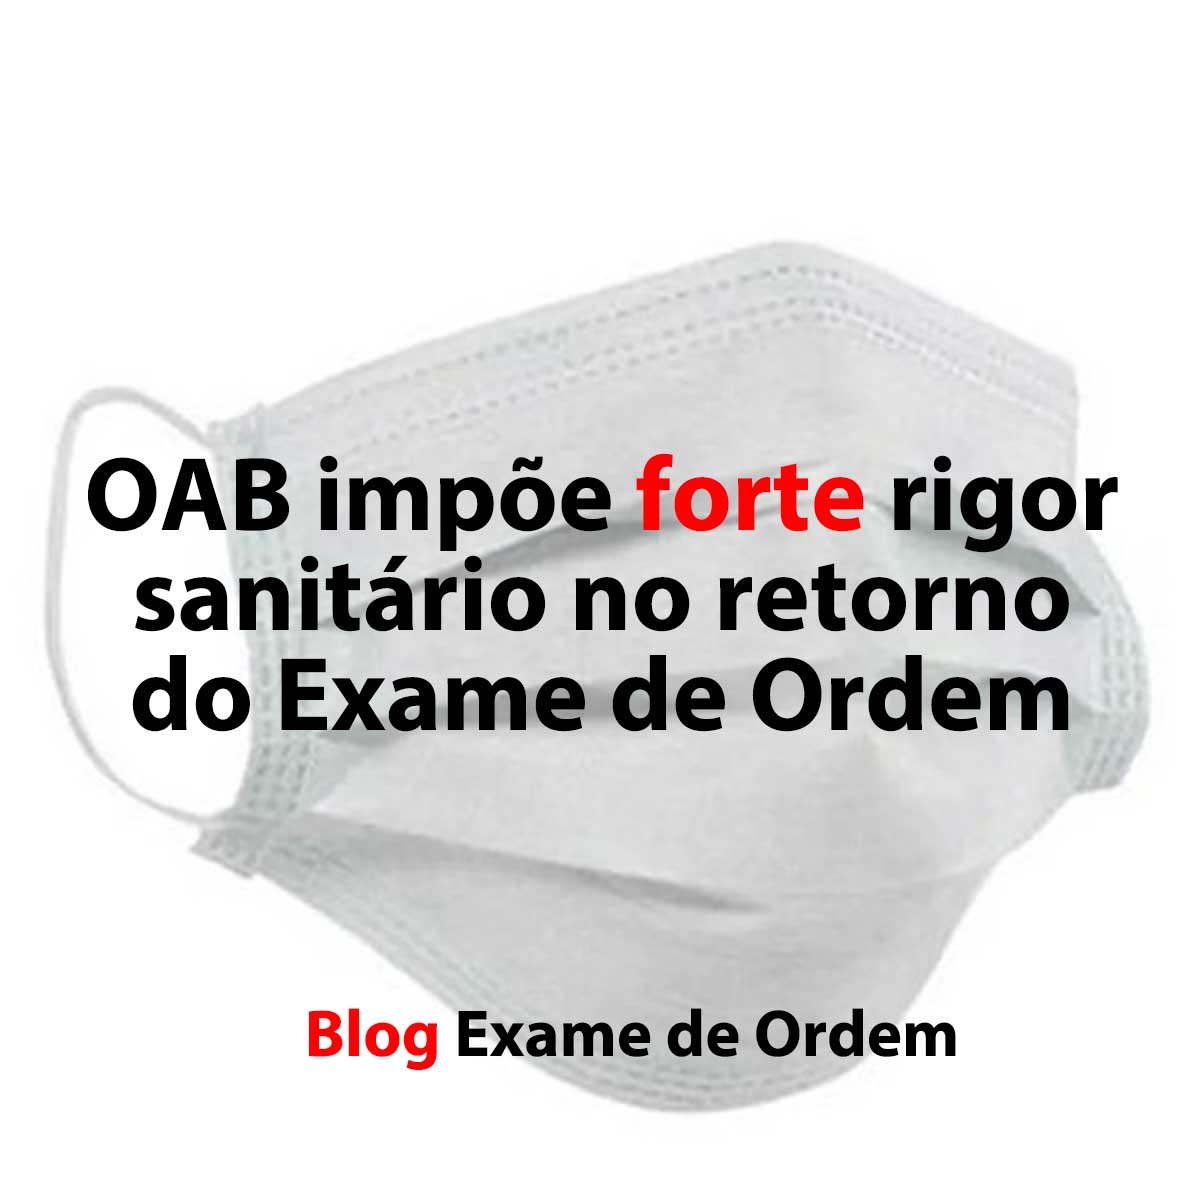 OAB impe forte rigor sanitrio no retorno do Exame de Ordem